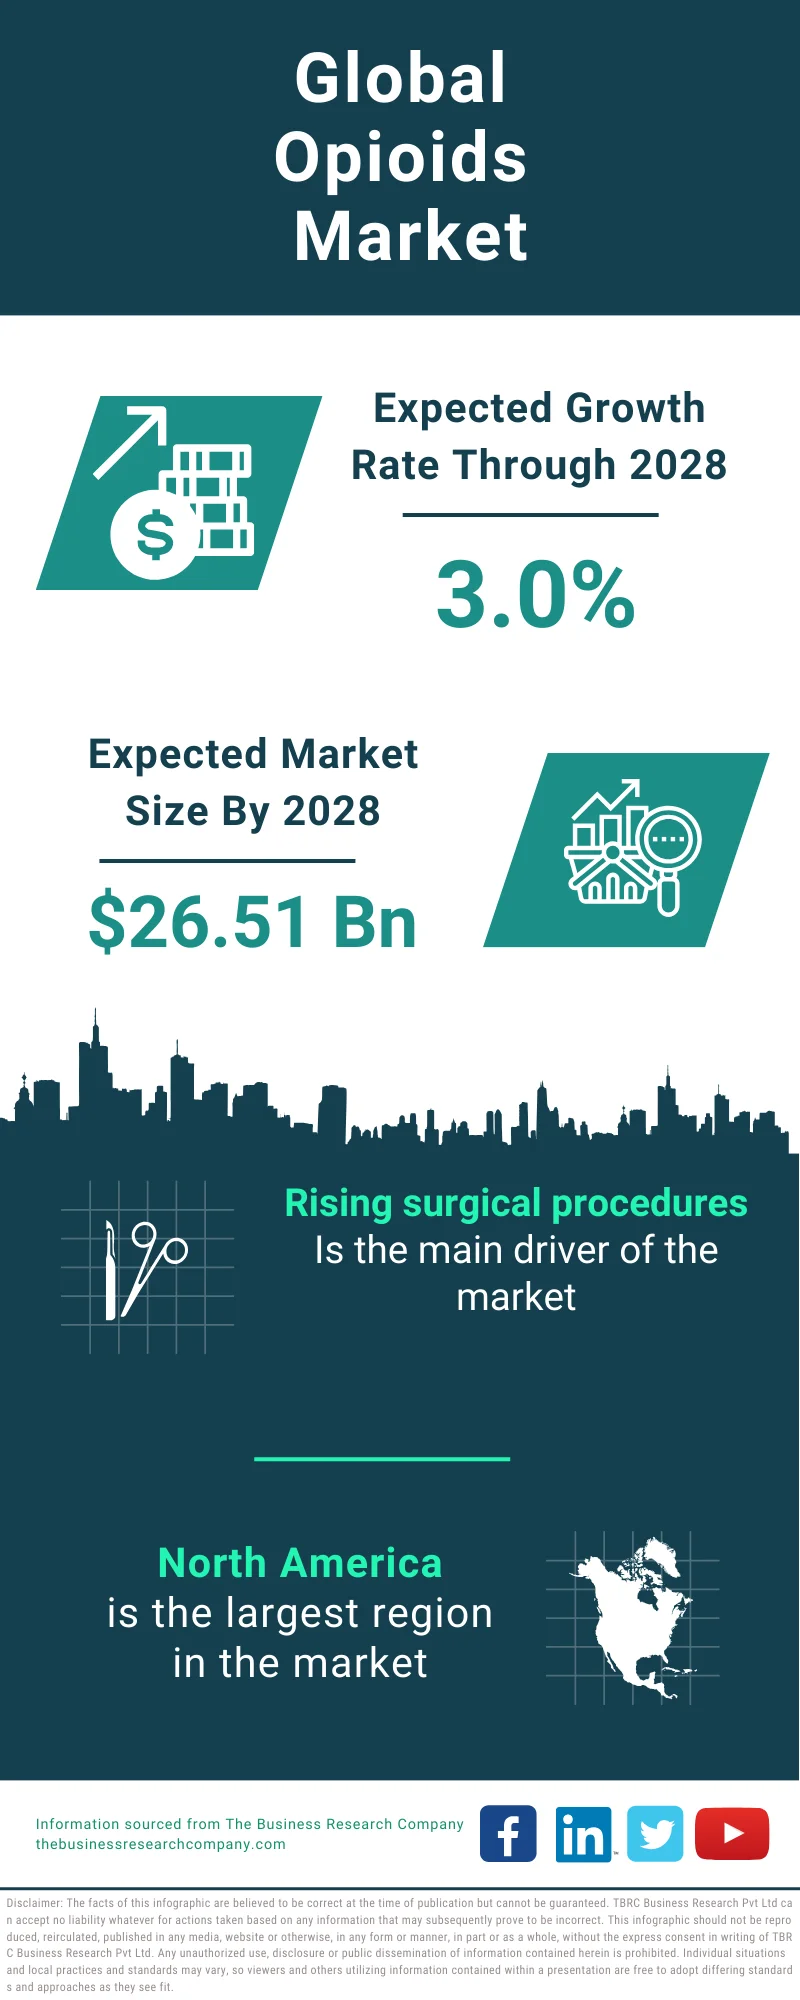 Opioids Global Market Report 2024 